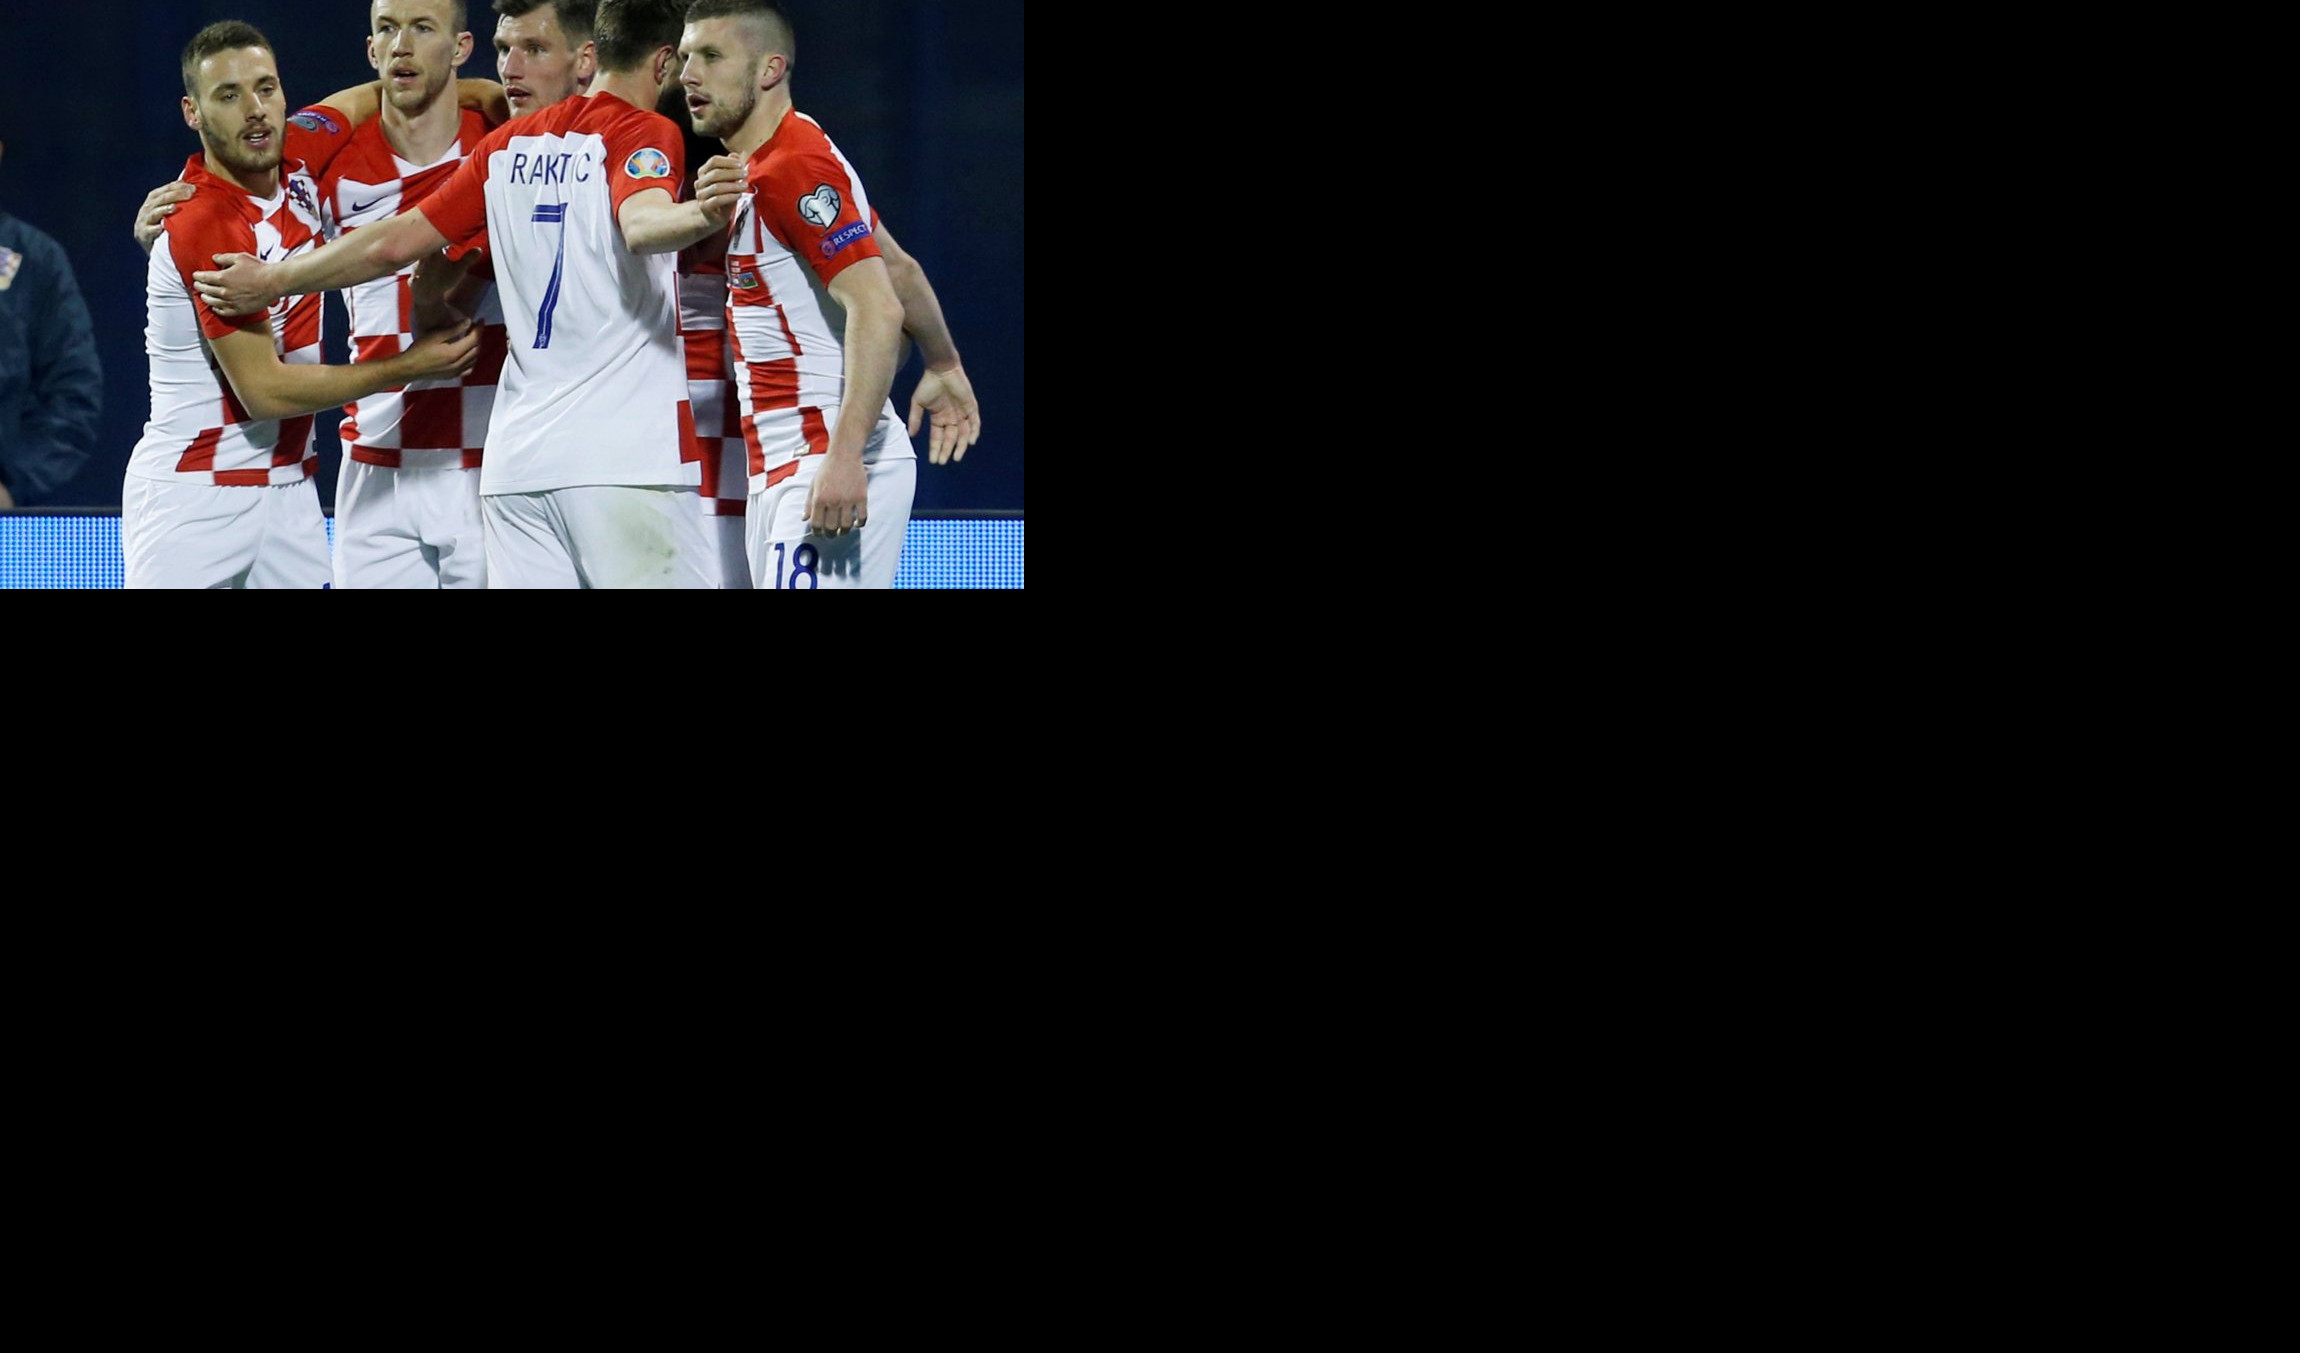 HRVATI BESNI ZBOG NOVOG DRESA! "Vatreni" će u ovoj opremi igrati na Evropskom prvenstvu, možda i protiv Srbije!